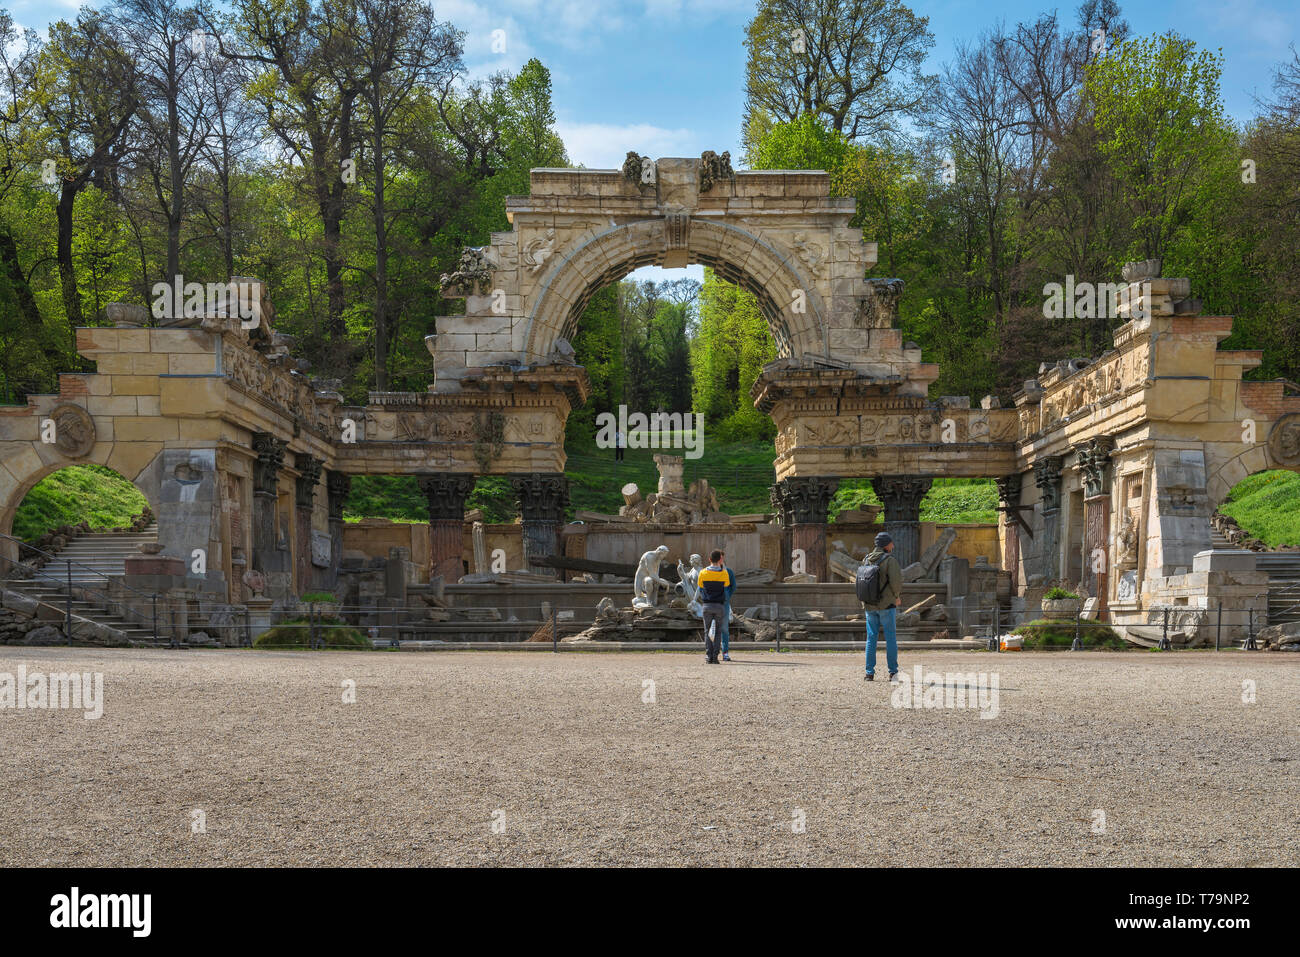 Römische Ruinen Schönbrunn Wien, Blick auf die römische Ruine (erbaut 1778) im Schlosspark Schönbrunn in Wien, Wien, Österreich. Stockfoto